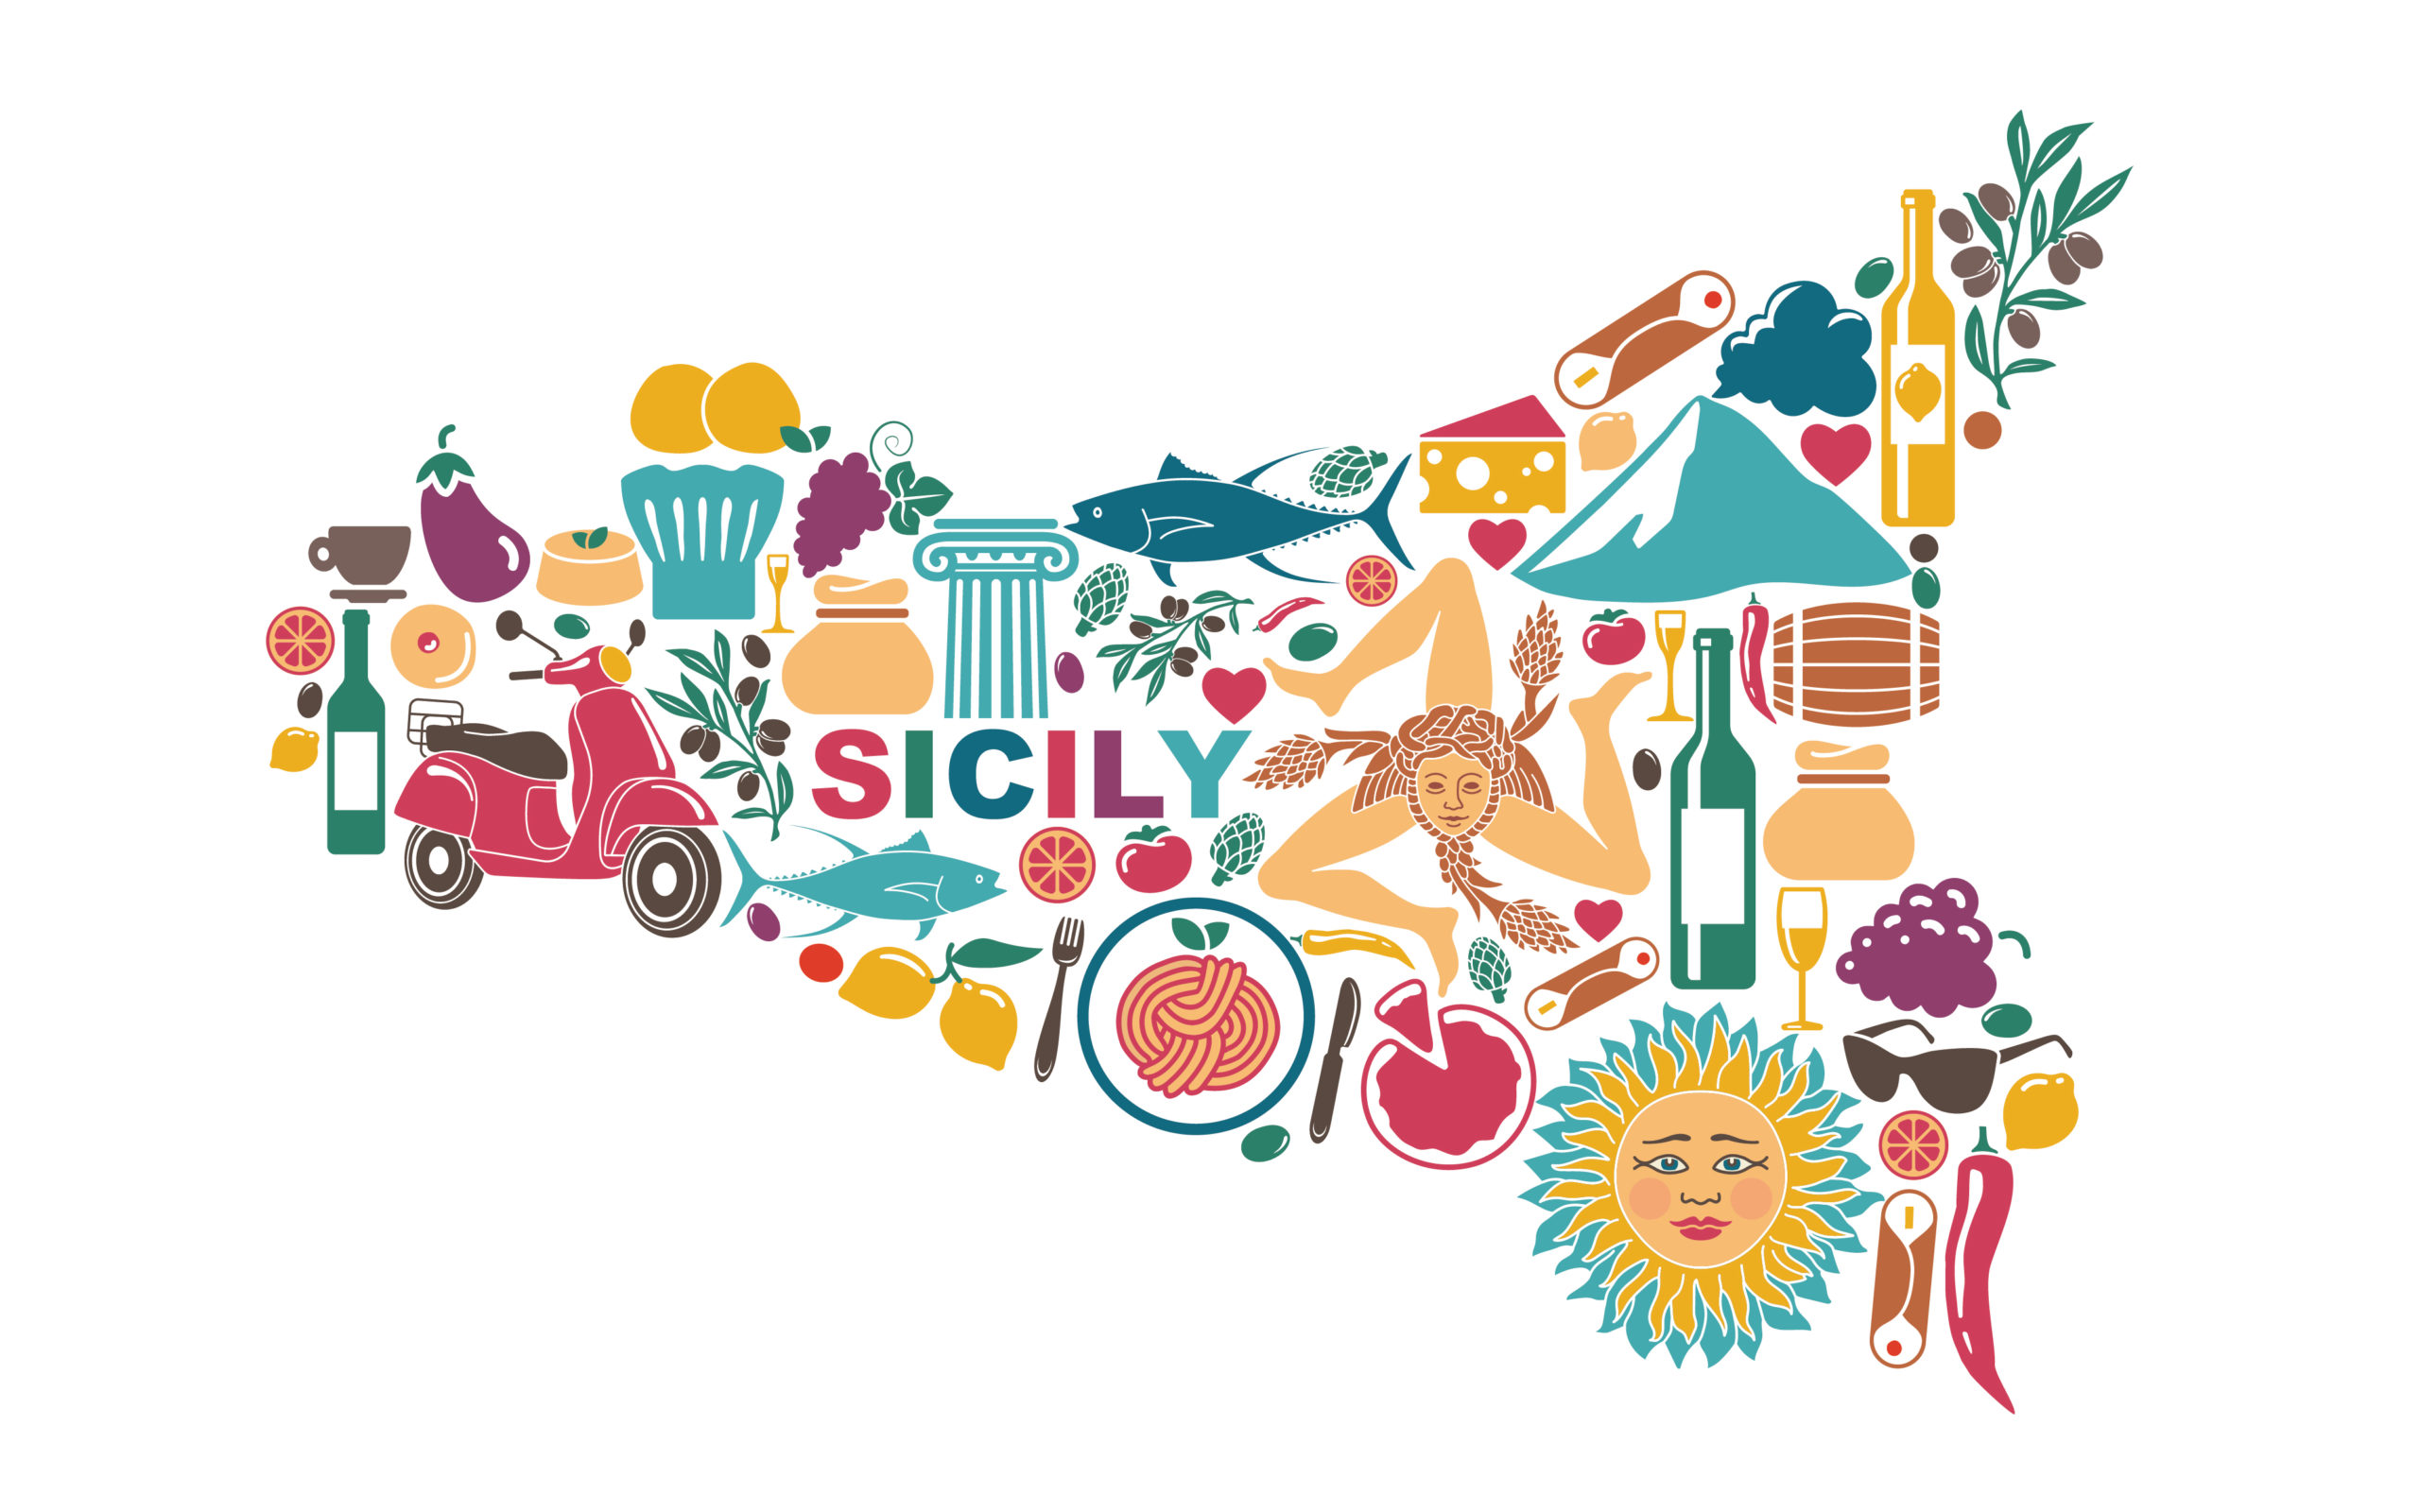 cucina tipica siciliana: la mappa dei prodotti tipici